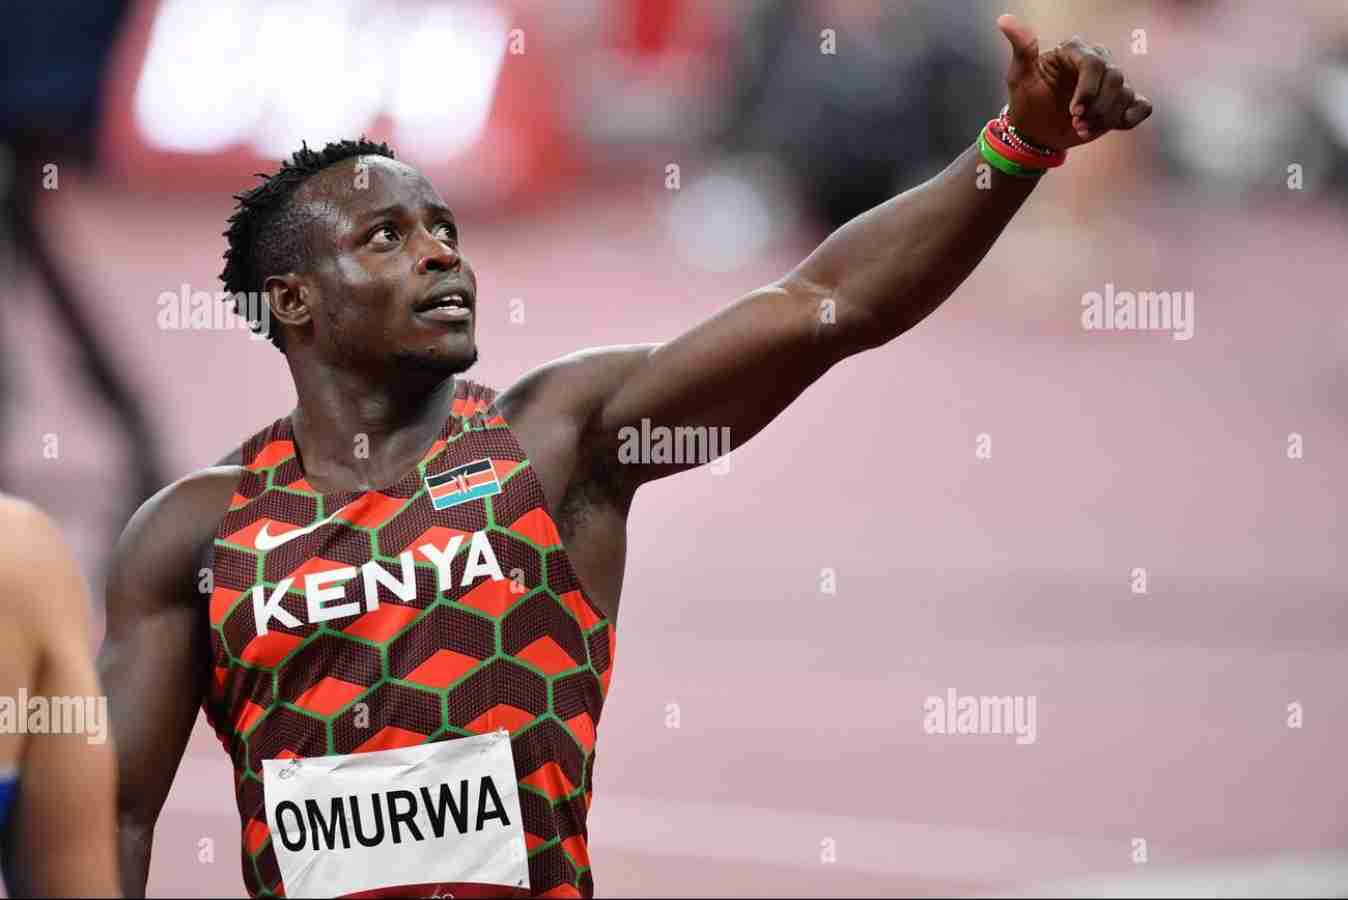 omurwa-ferdinand-ken-athletics-mens-100m-round-1-heat-tokyo-2020-olympic-games